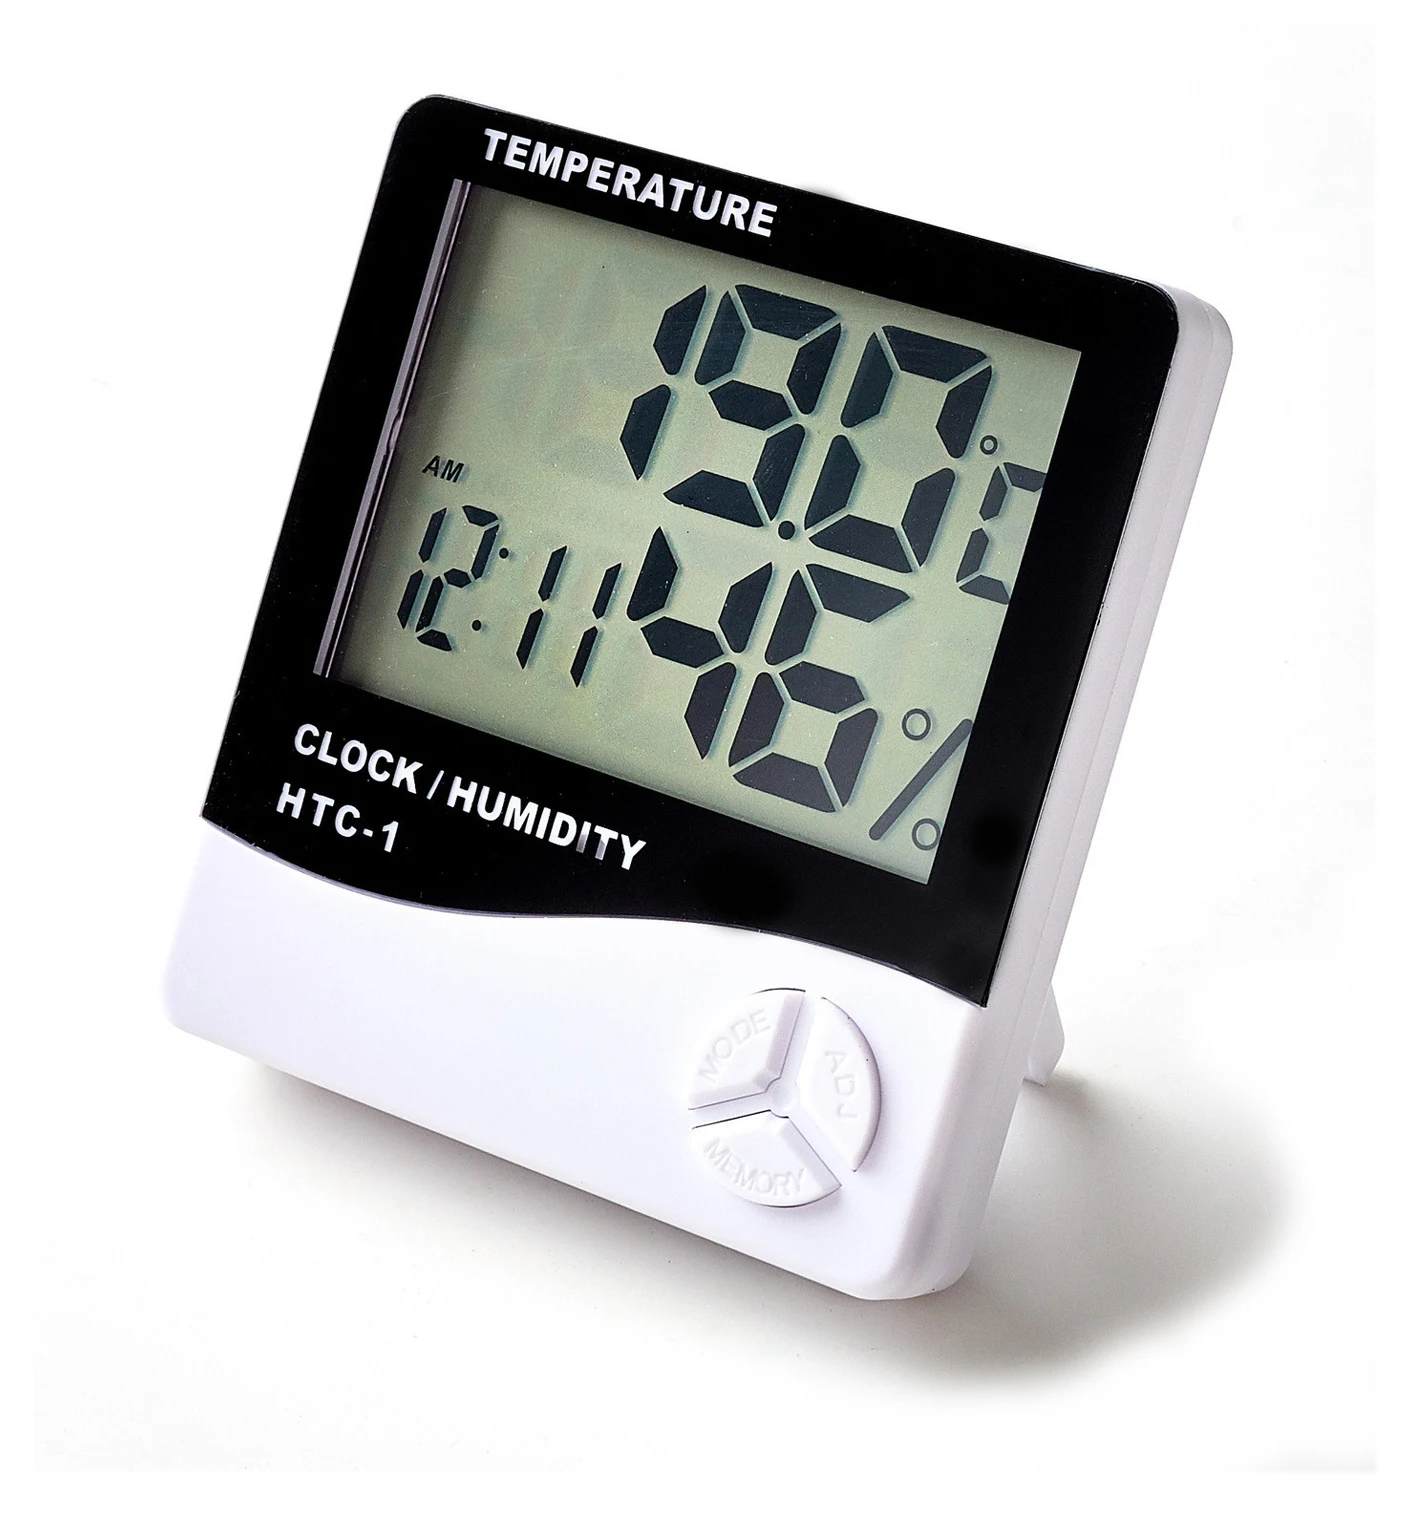 

Удобный комнатный датчик температуры и влажности с цифровым ЖК-дисплеем, бытовой электронный термометр, гигрометр